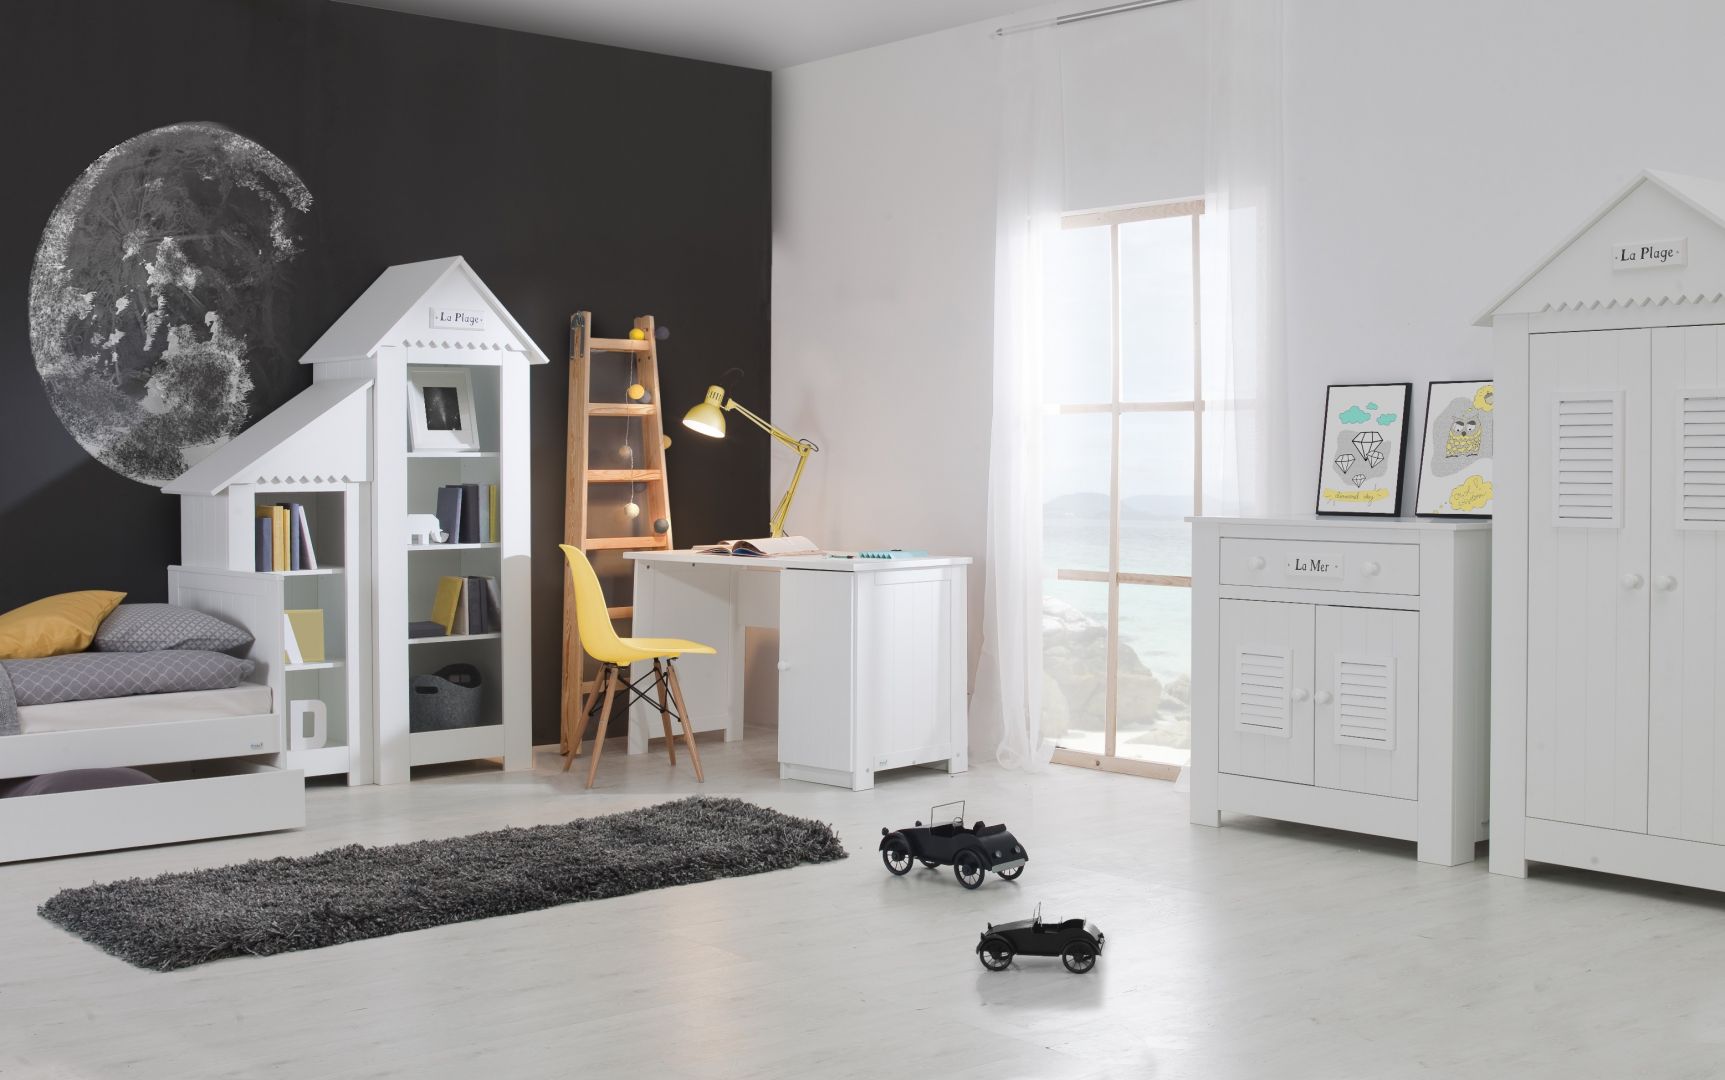 Pokój dziecka urządzony na styl skandynawski to popularne rozwiązanie. Meble w bieli pięknie wyglądają przez długie lata i można je zestawiać z kolorowymi dodatkami. Fot. Pinio